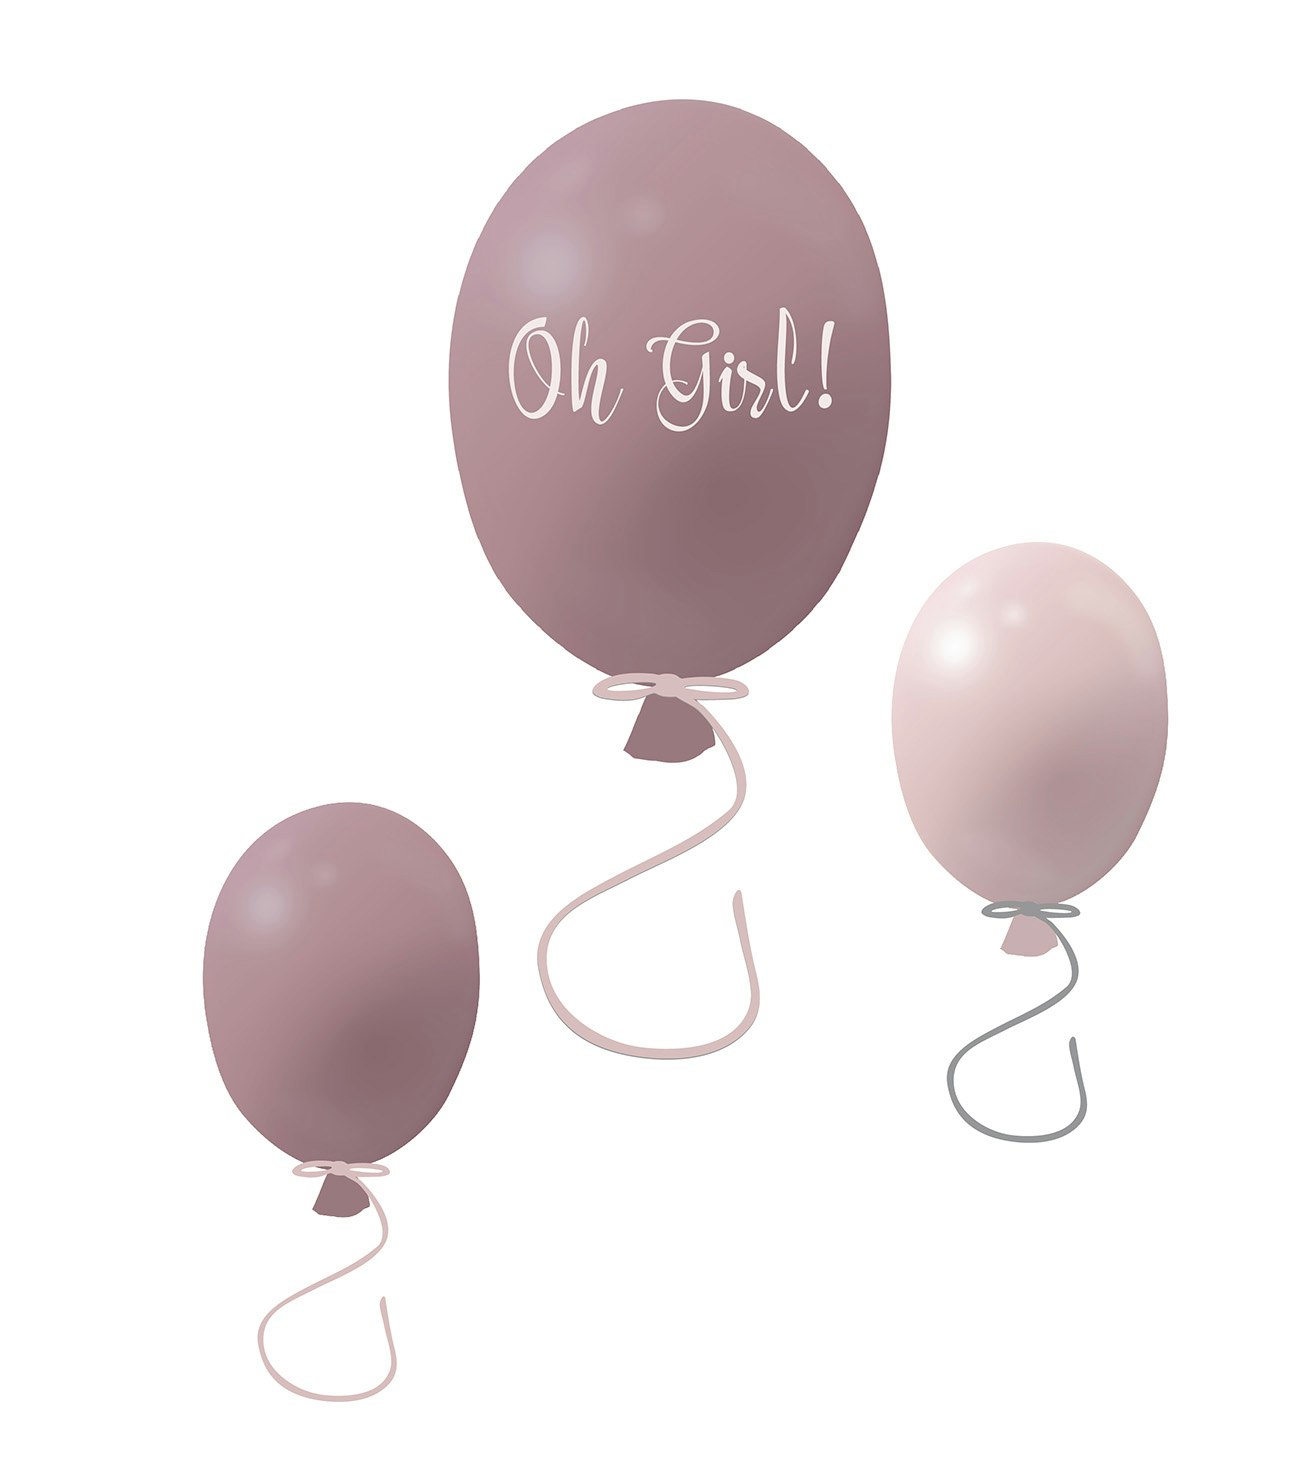 Väggklistermärke partyballonger 3-pack, dusty pink Väggklistermärke bestående av en stor rosa ballong med texten Oh girl och två mindre ballonger